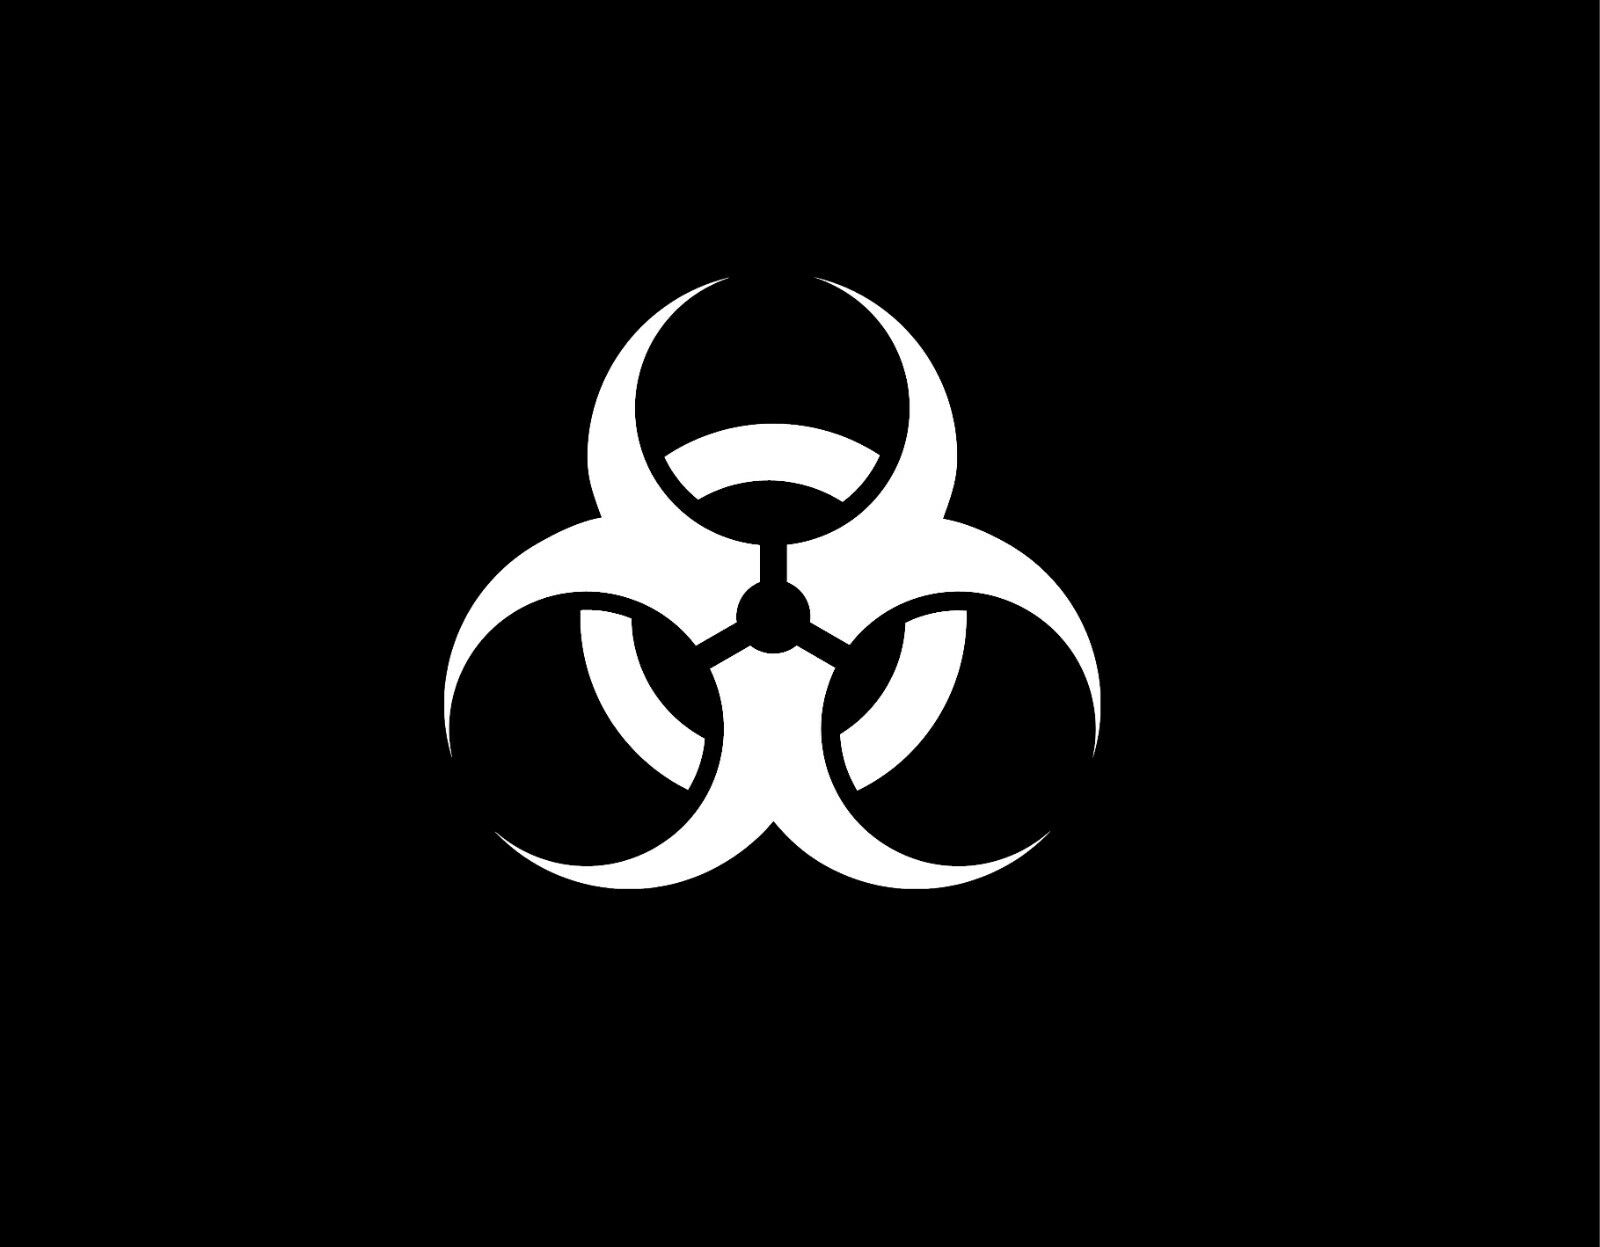 Biohazard Sticker - Danger Mutation Vinyl Poison Decal Car Truck Outdoor